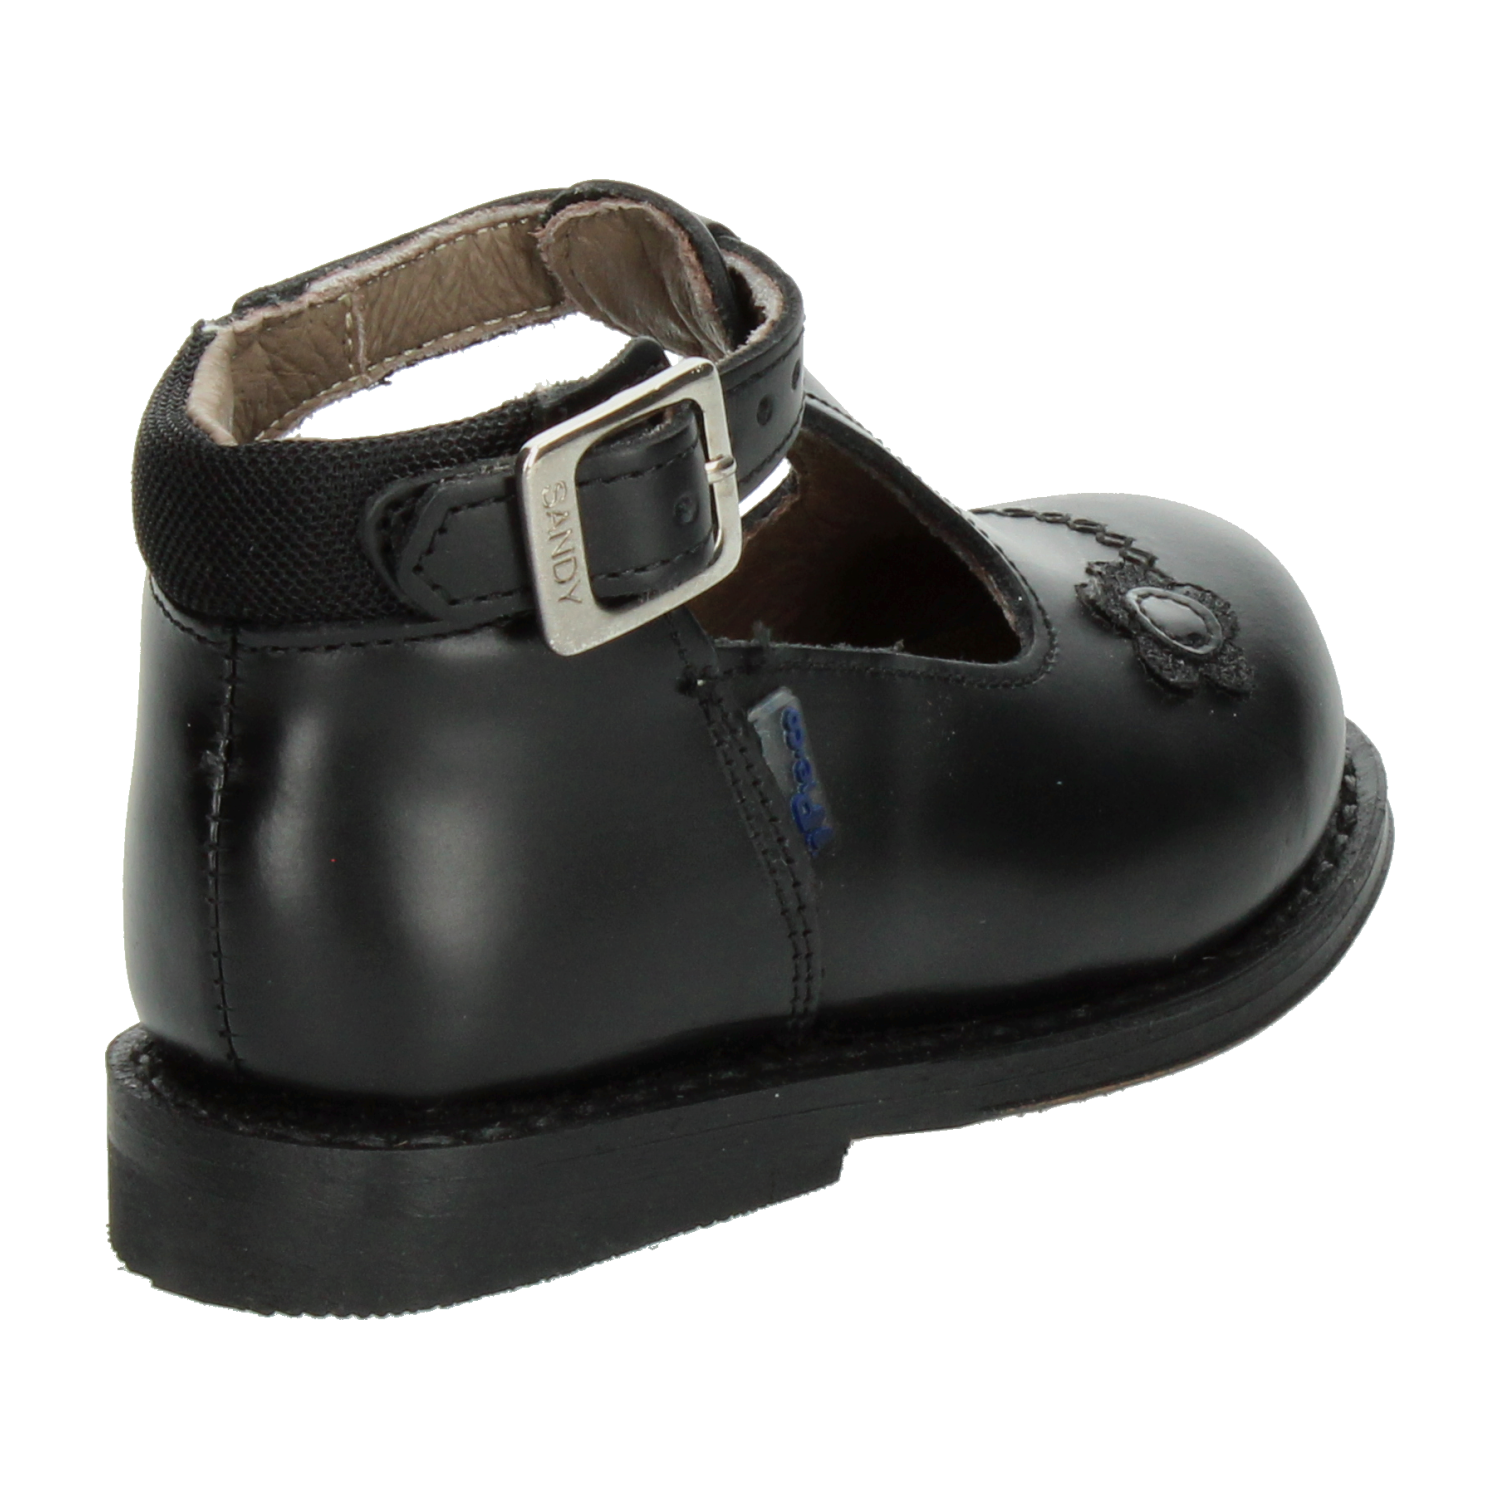 Zapato Ortopédico Pie-co Negro para Niña [PPP162] - Zapaterias Torreon